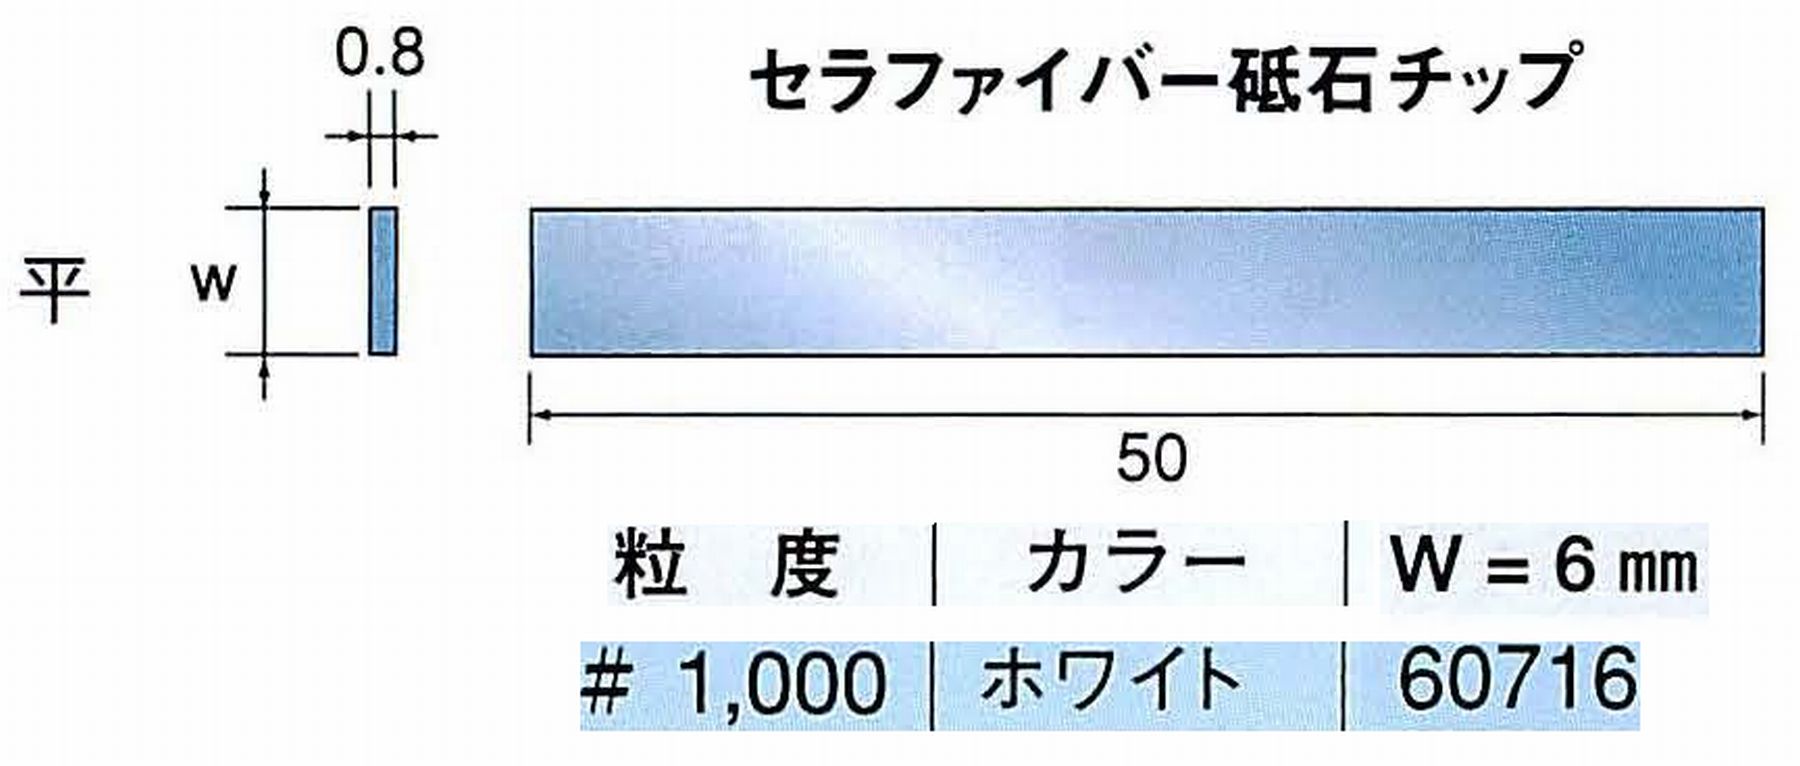 ナカニシ/NAKANISHI 超音波研磨装置 シーナスneo/シーナス専用工具 セラファイバー砥石チップ 平 60716